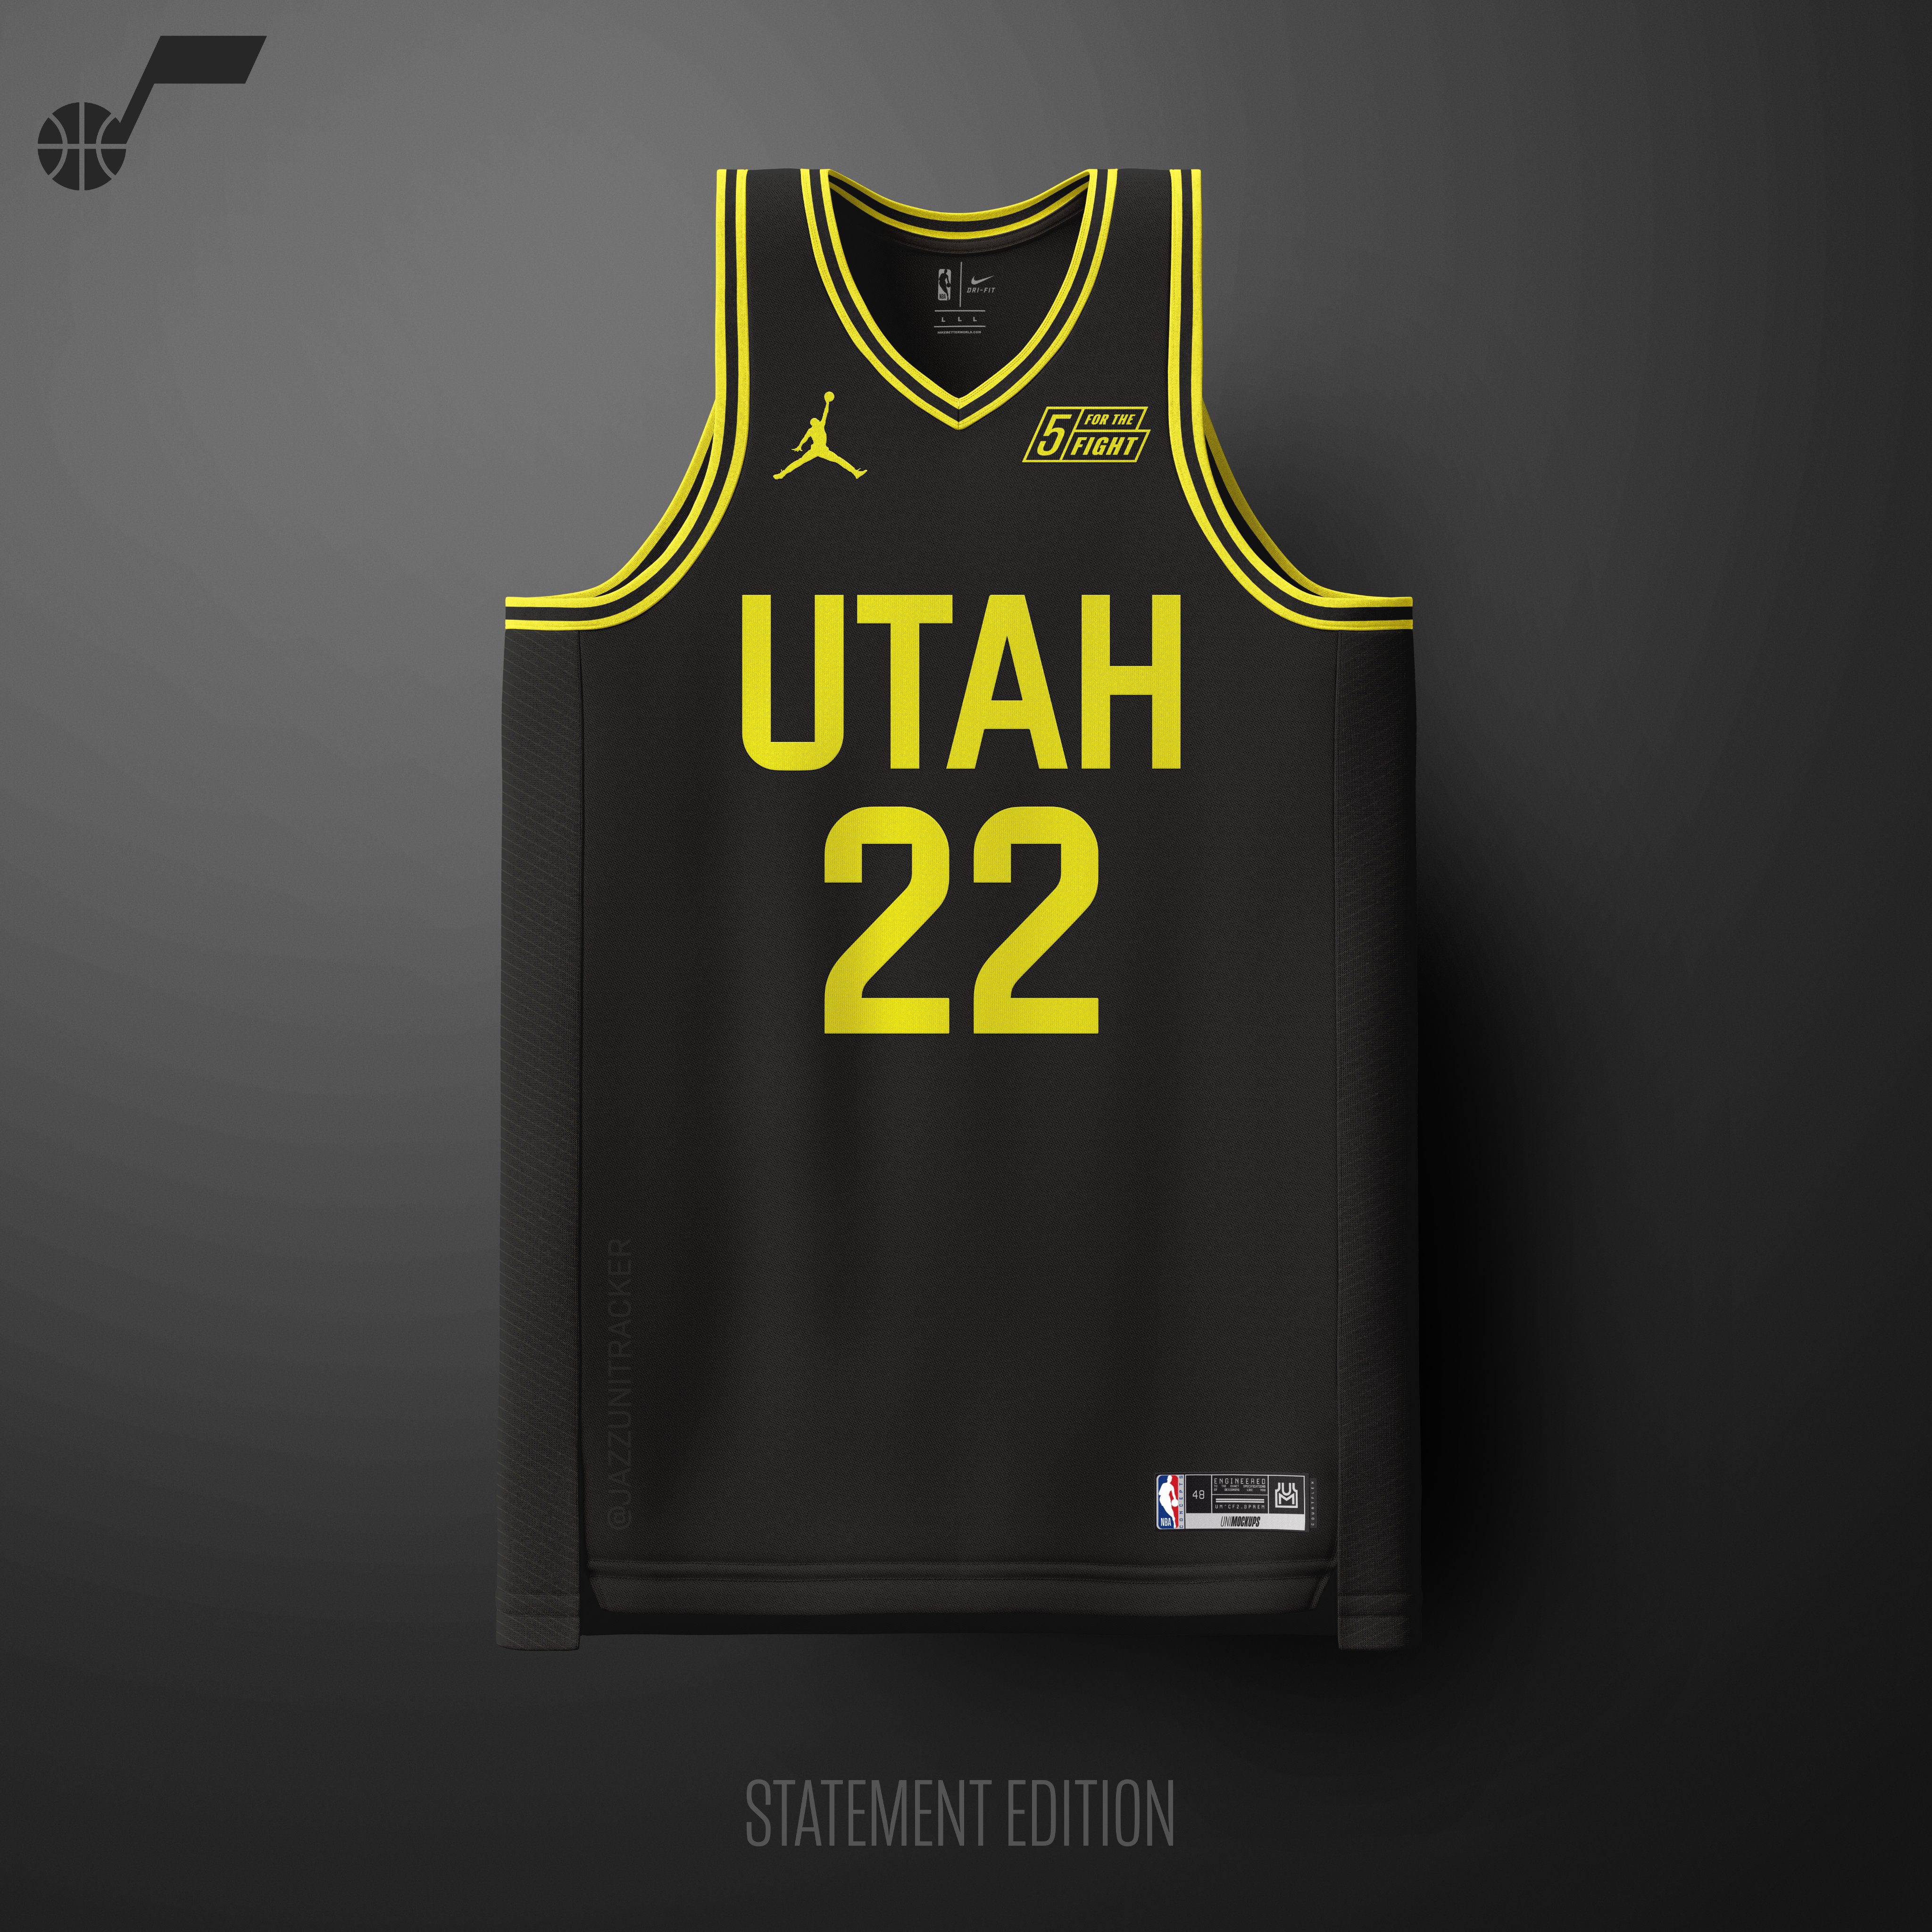 JazzUniTracker® on Twitter  Jersey design, Basketball uniforms